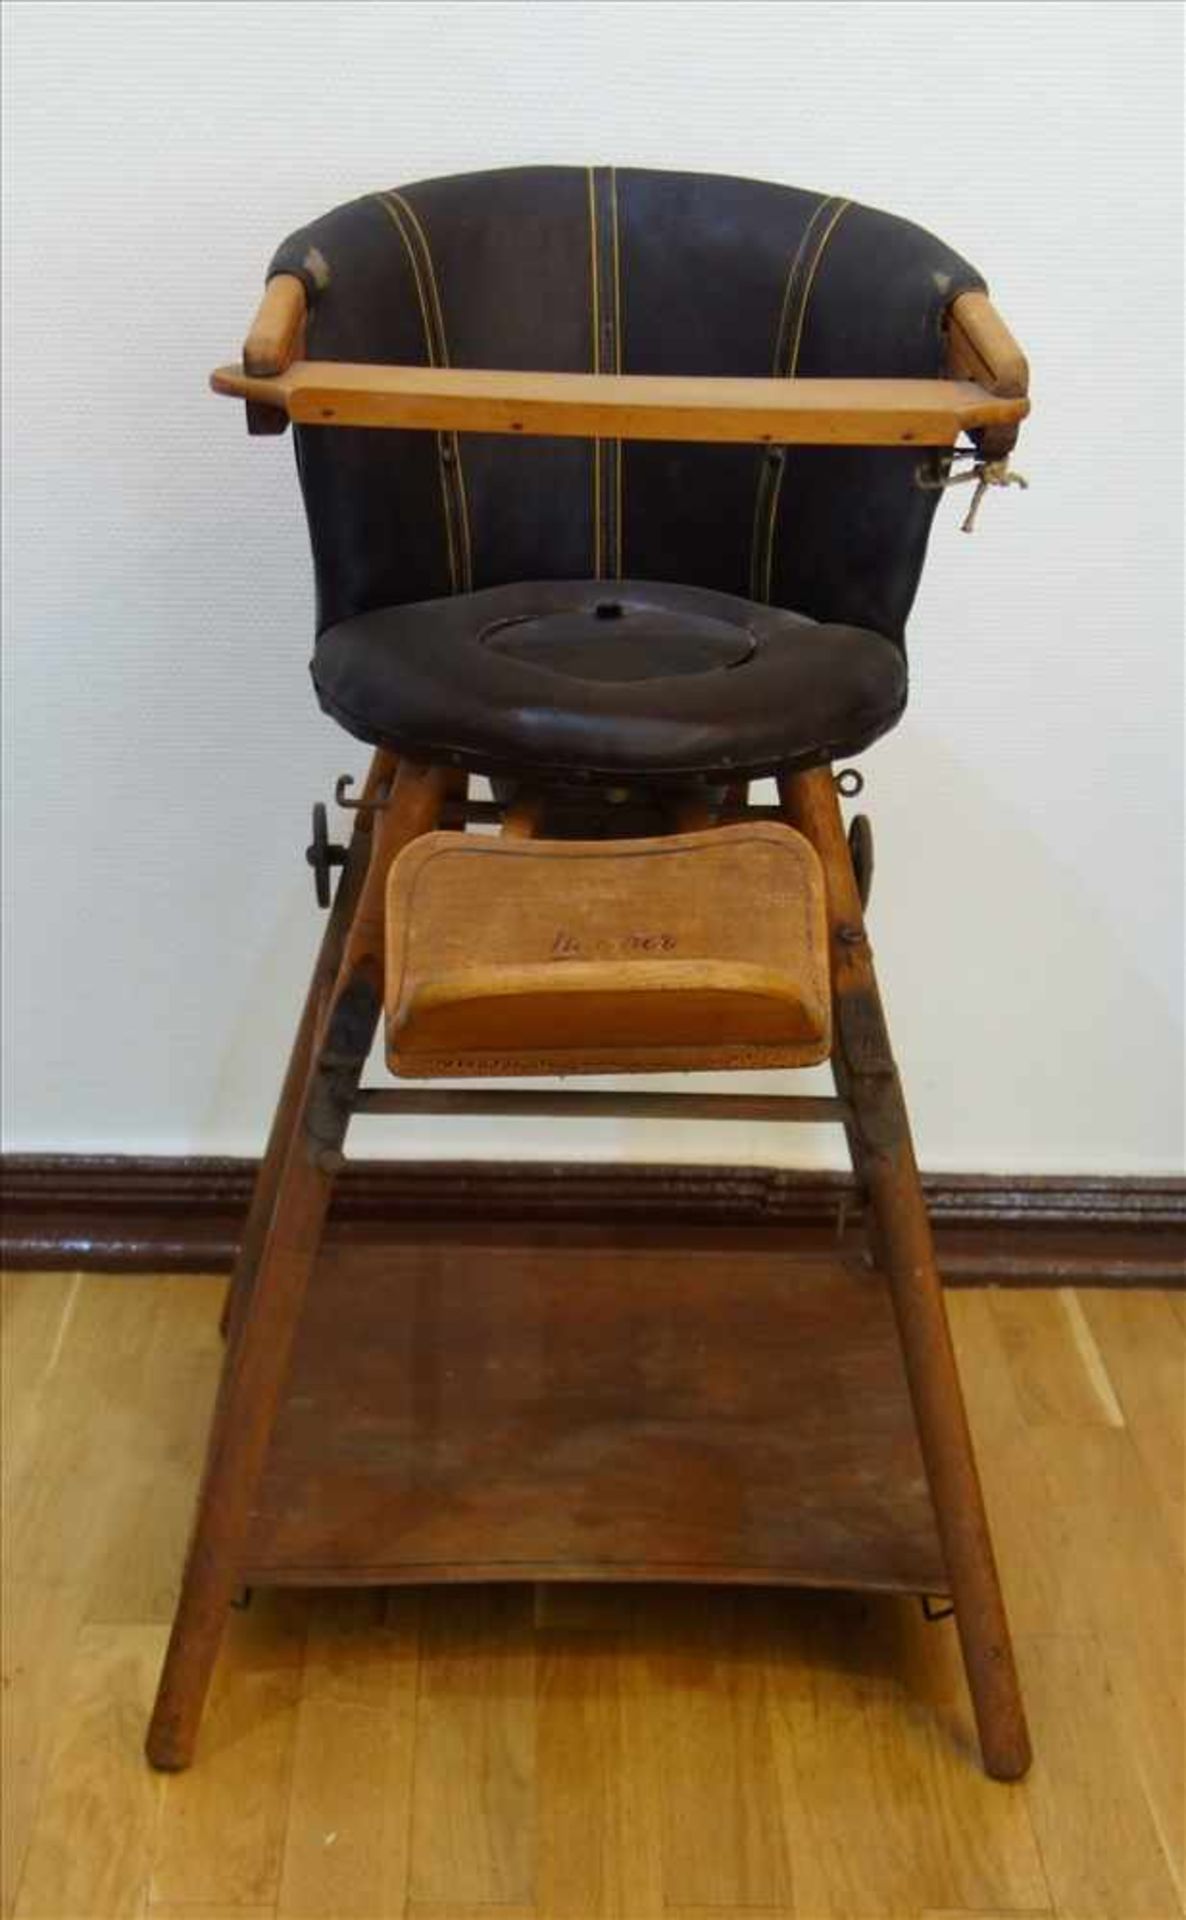 kombinierter Kinderstuhl, 30er Jahre, Holz/Leder, Rundhölzer, gerundeter Polsterstuhl, Tischchen mit - Bild 3 aus 3